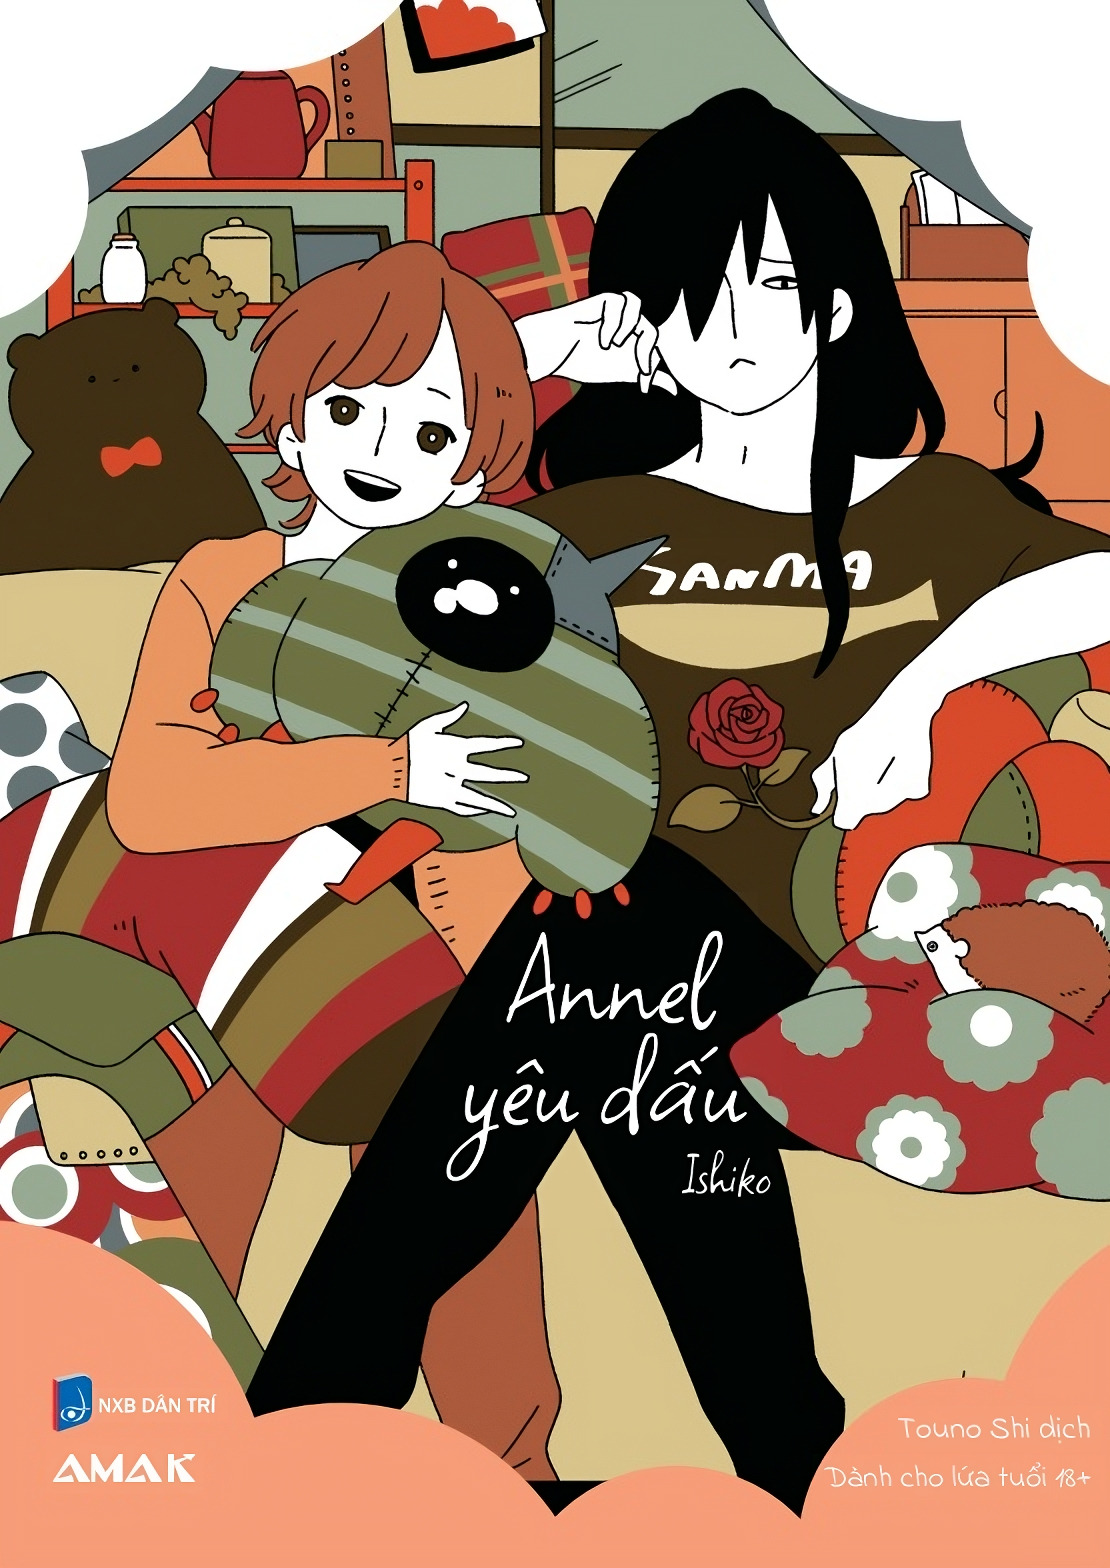 [Manga] Annel Yêu Dấu - Ishiko - Amakbooks